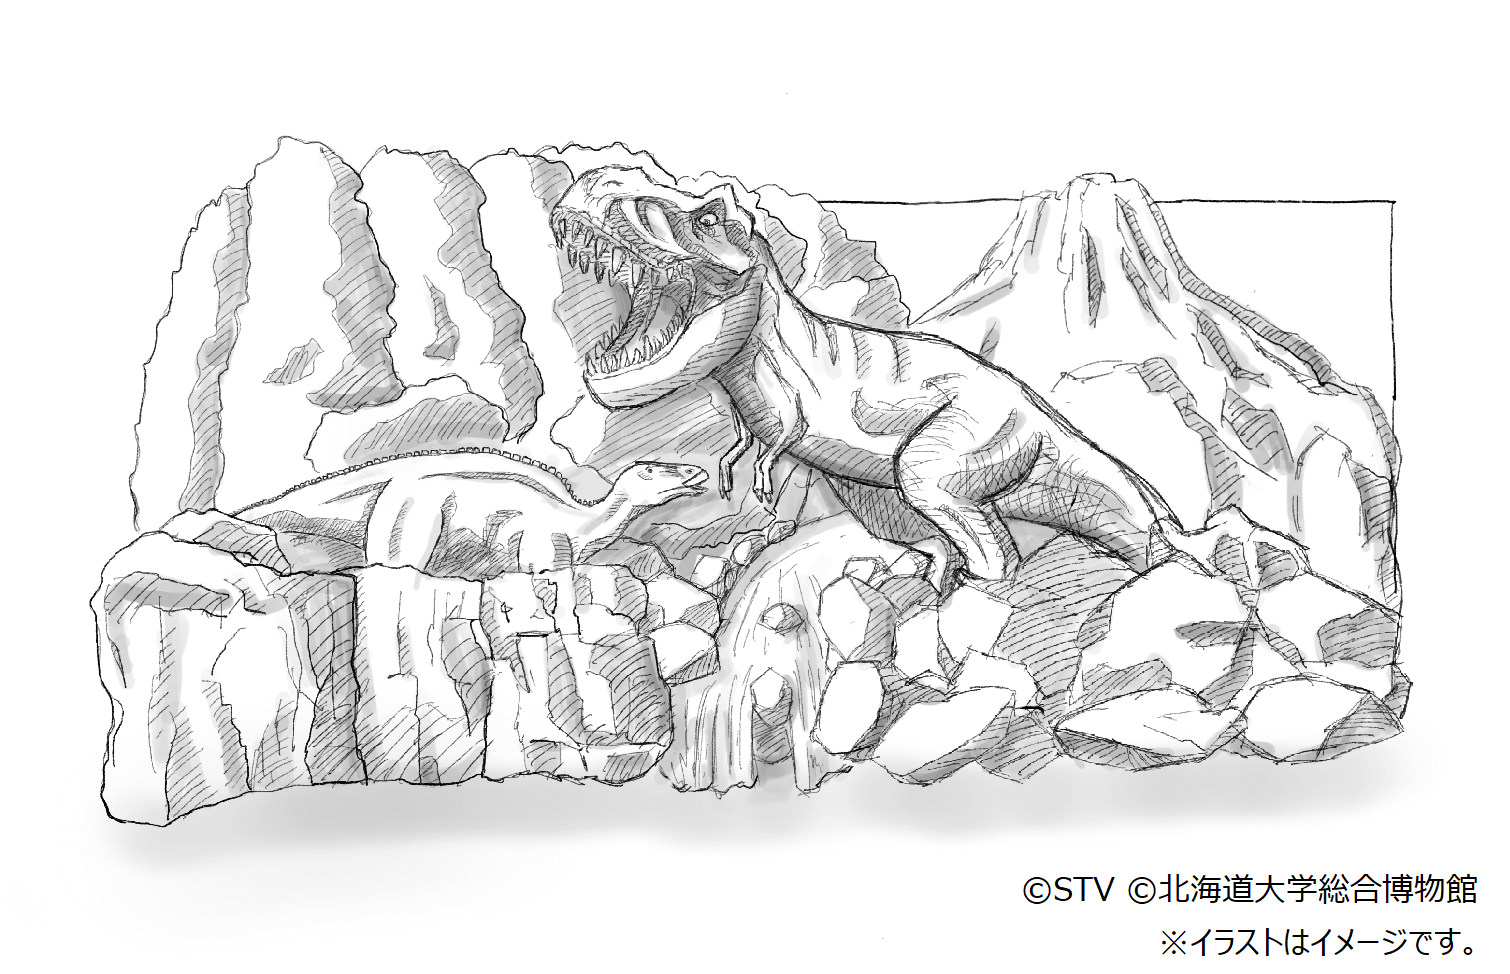 第73回 さっぽろ雪まつり-実寸大のティラノサウルスとカムイサウルス(純白の大雪像)